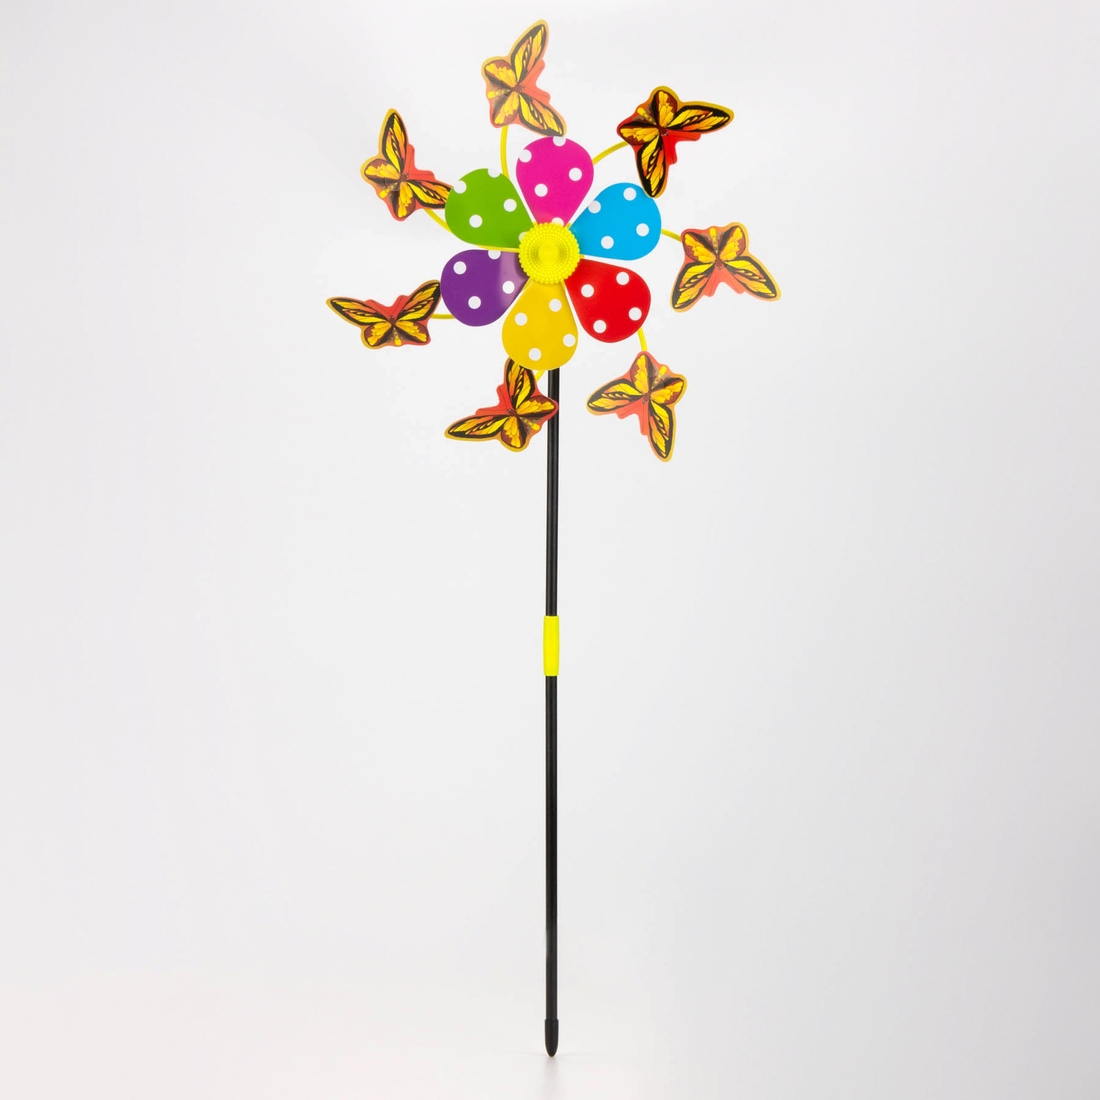 Игрушка ветряная мельница Бабочка Q771 Разноцветная (2000989675594)